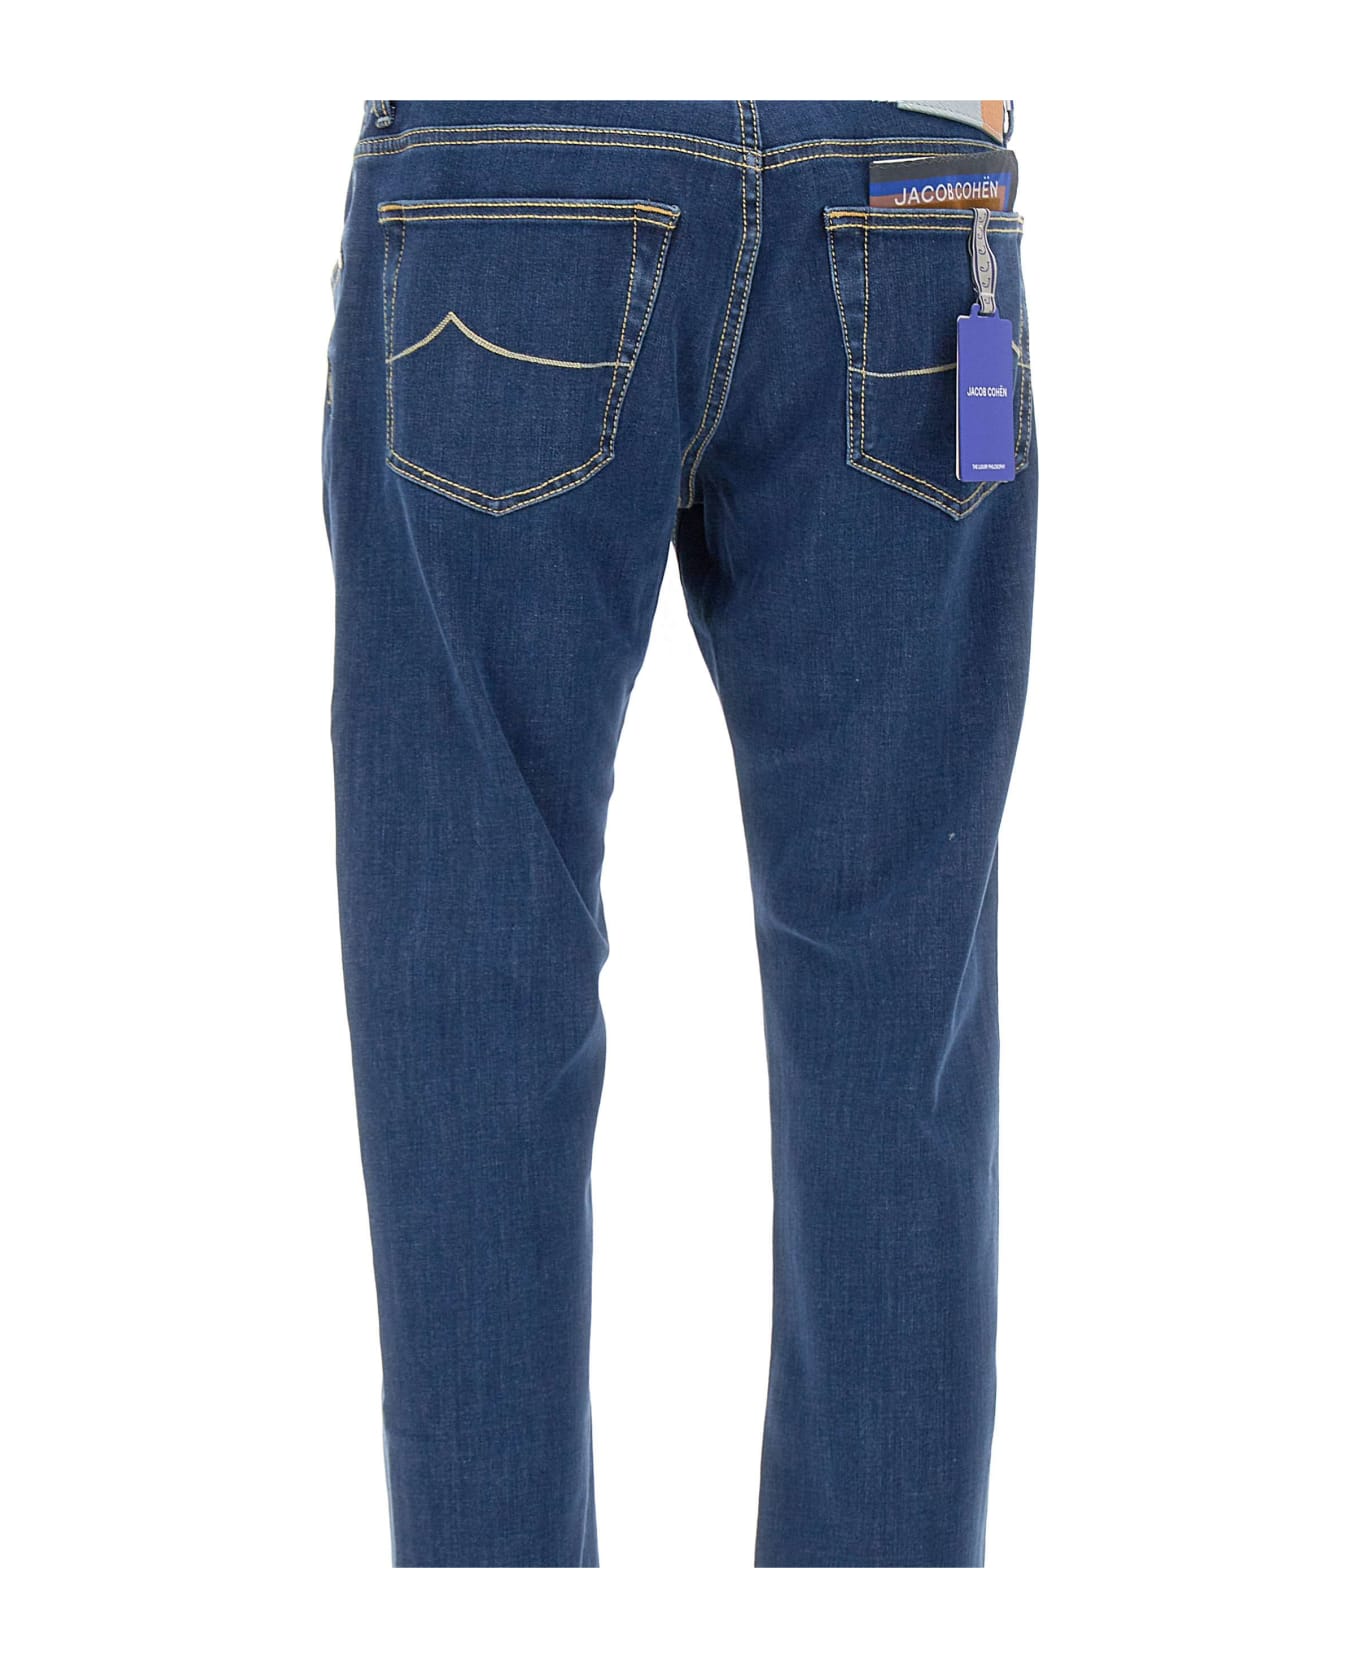 Jacob Cohen "nick" Jeans - BLUE デニム